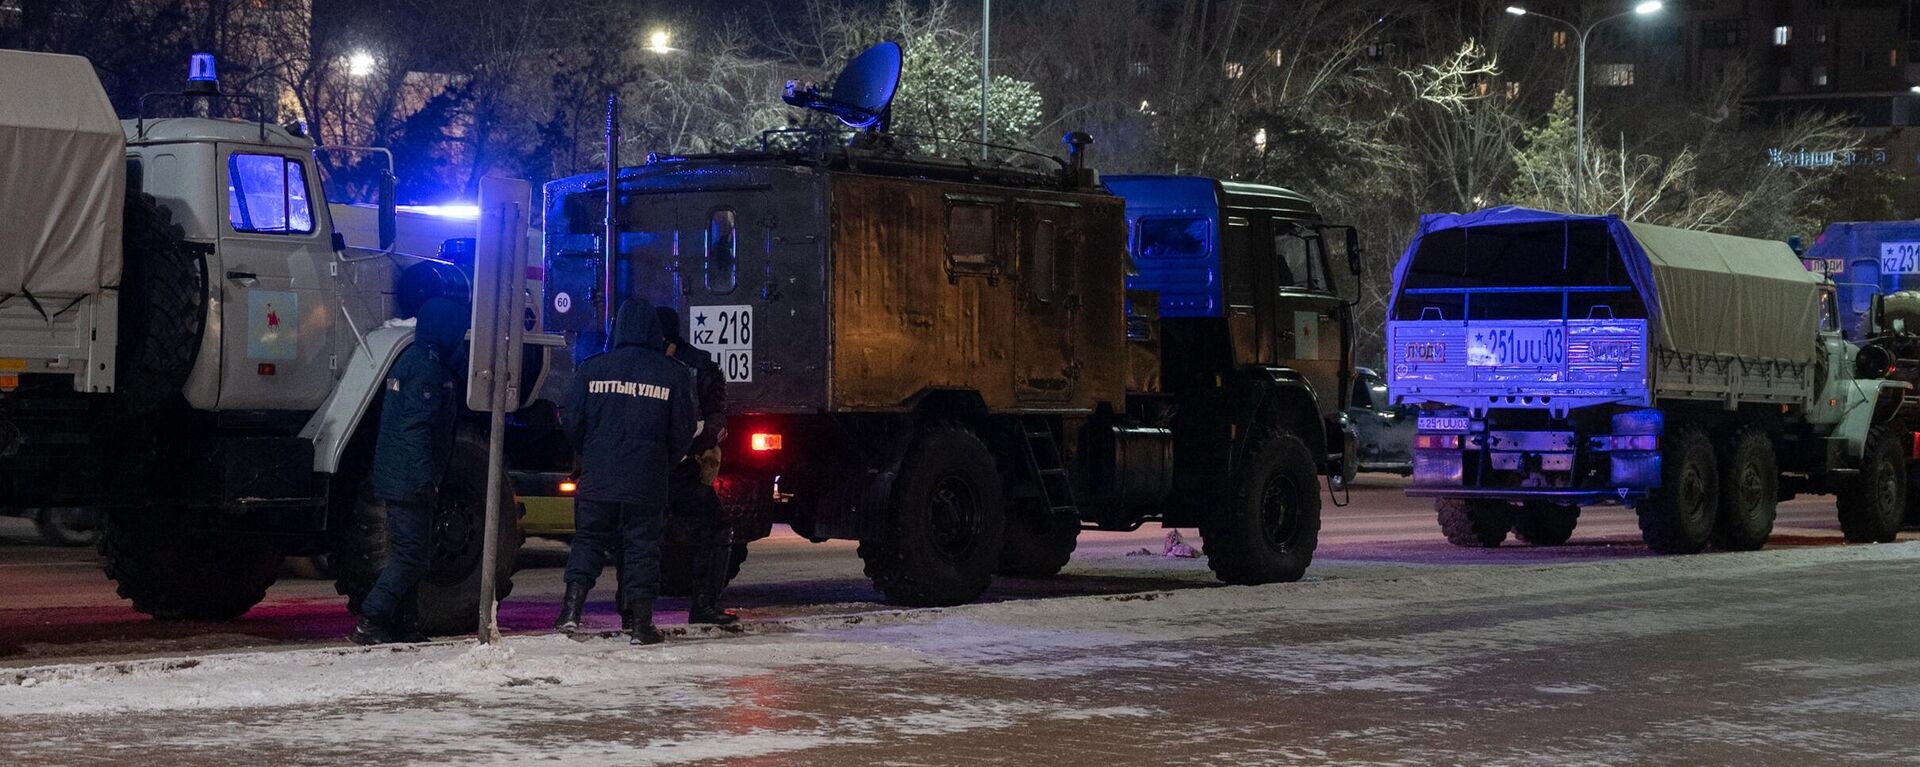 Ղազախստանի ազգային գվարդիայի զինծառայողները հերթապահում են փողոցներից մեկում (հունվարի 5, 2022թ) ։ Նուր-Սուլթան - Sputnik Արմենիա, 1920, 06.01.2022